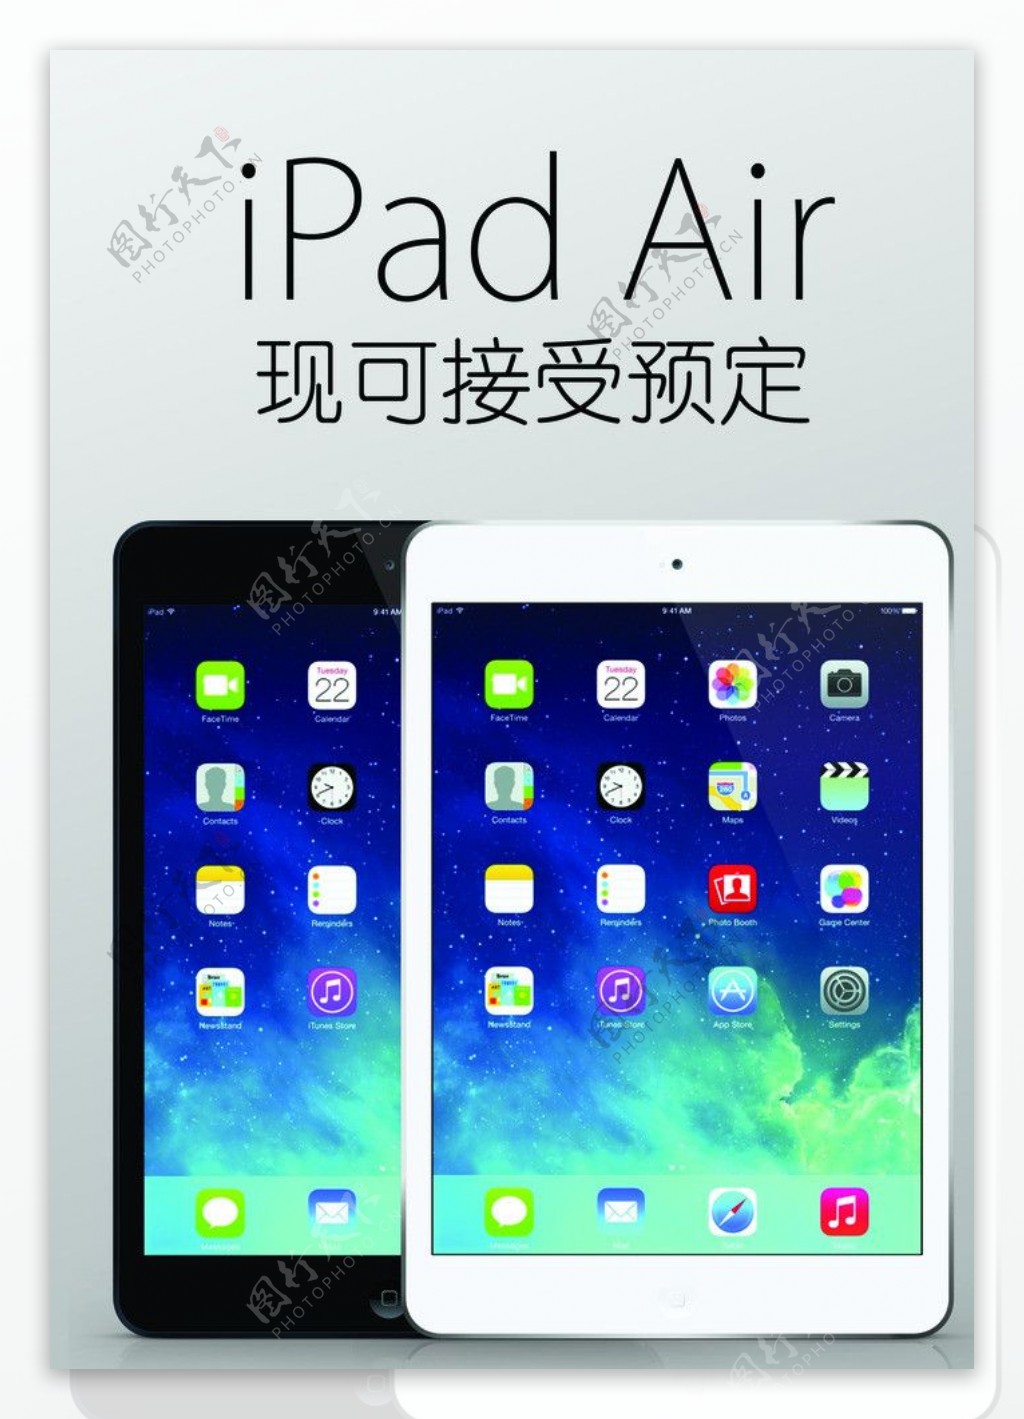 iPadAir预定图片